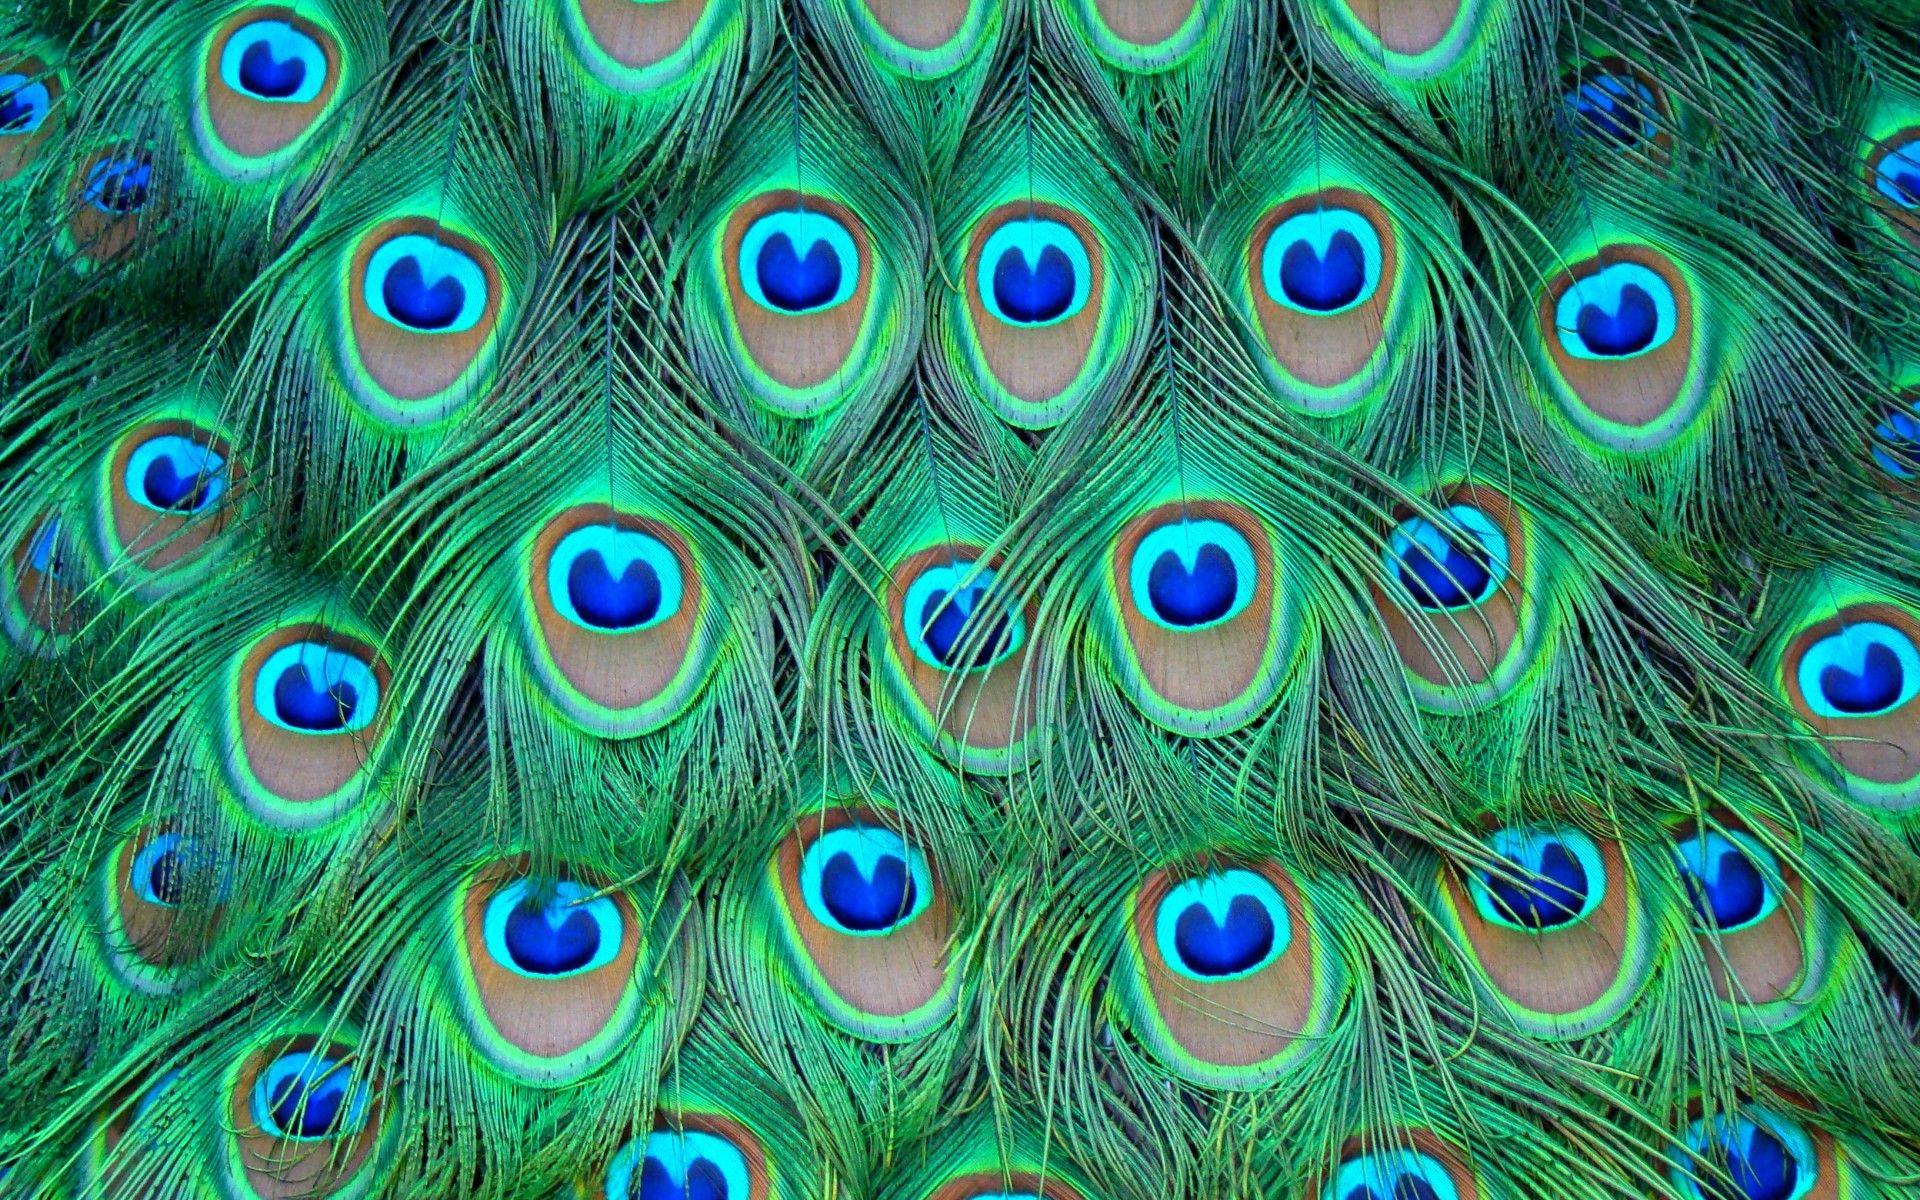 Peacock bird wallpaper dowload